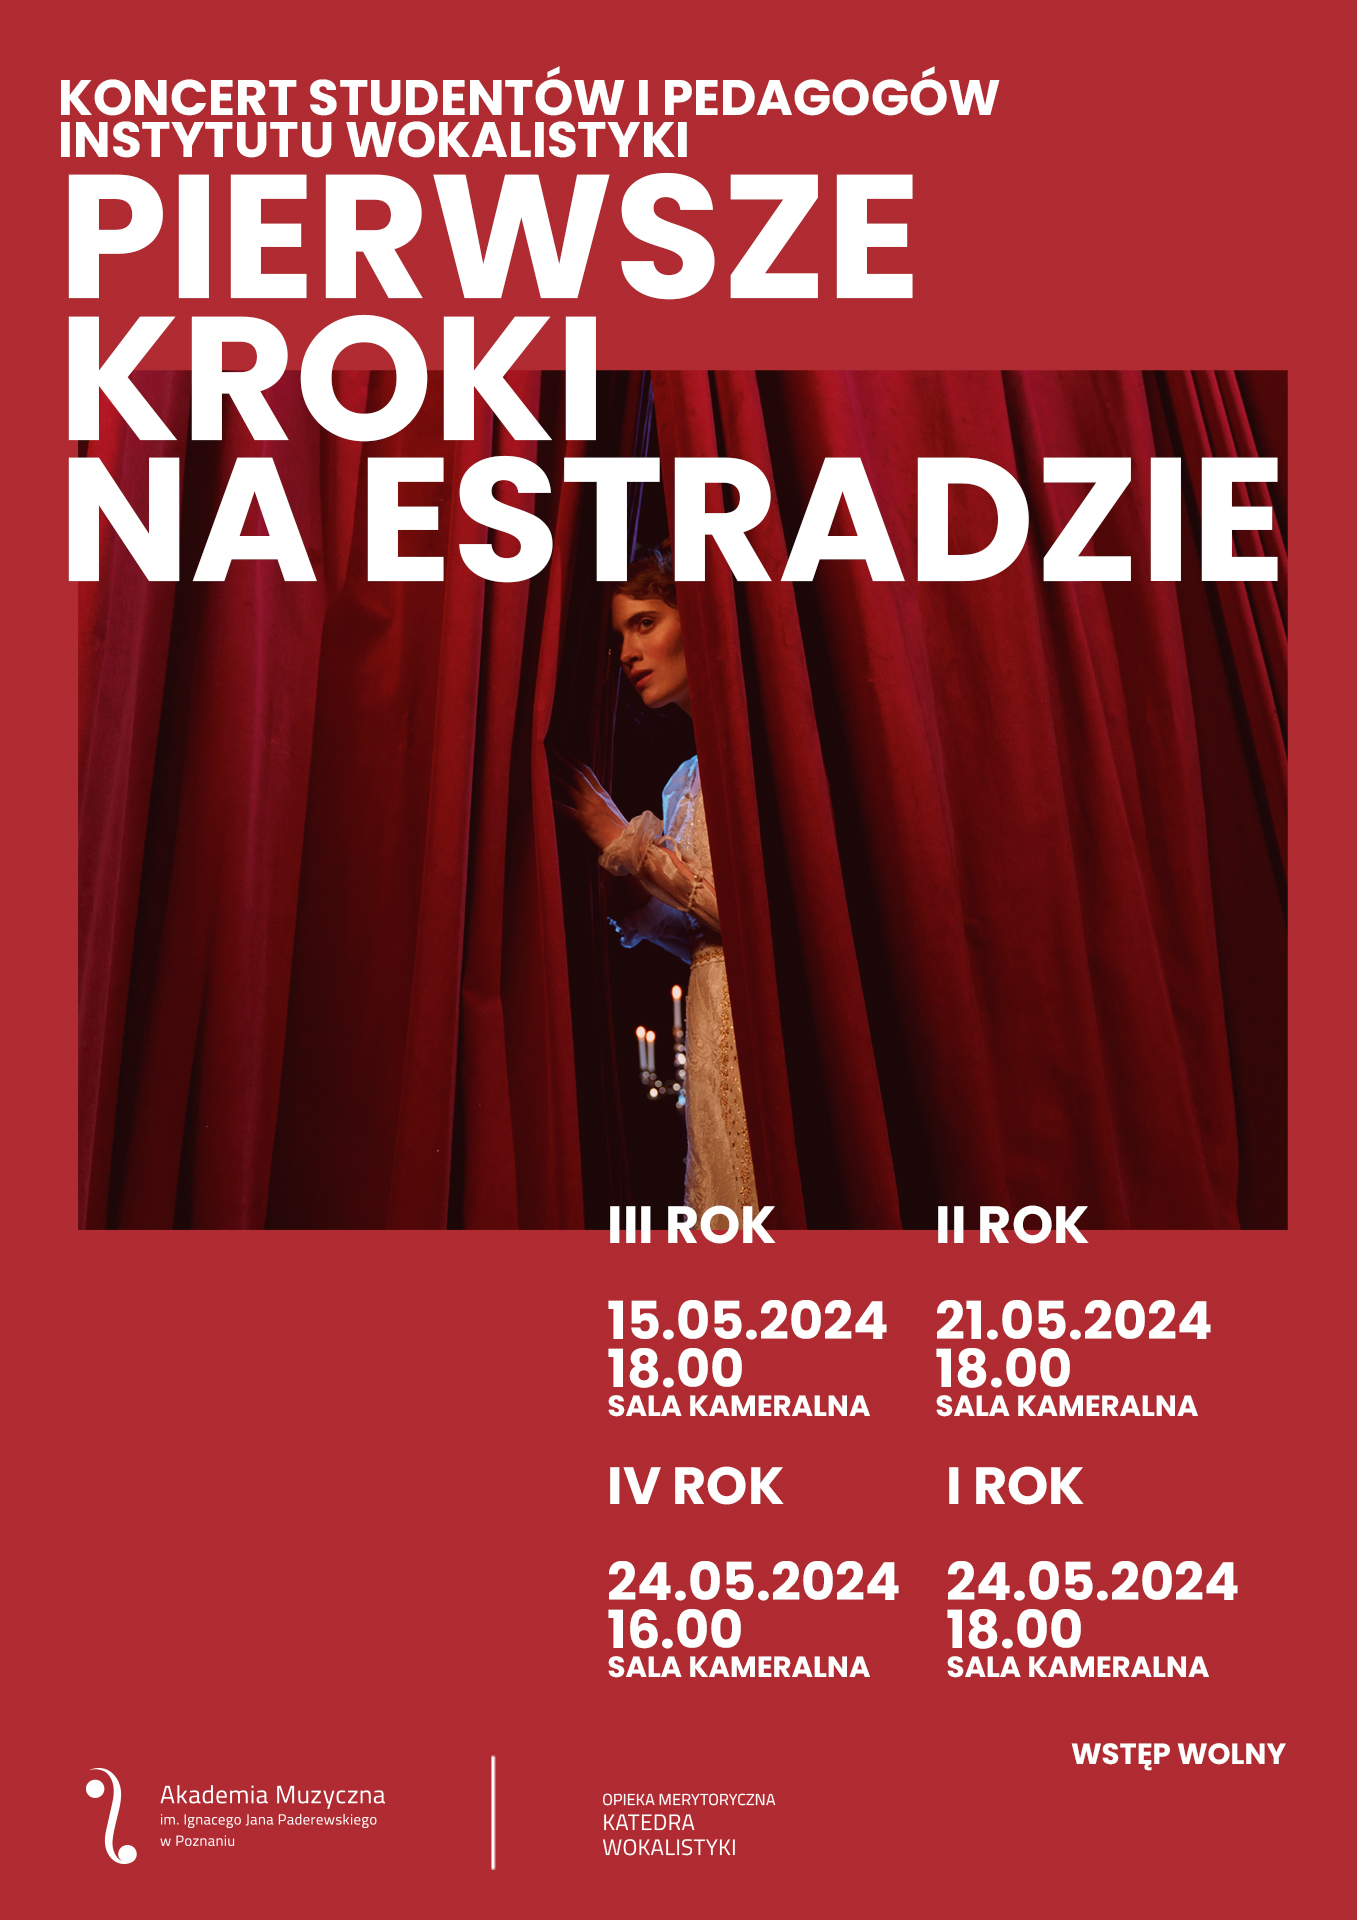 Plakat zawiera informacje na temat koncertów z cyklu "Pierwsze kroki na estradzie", które w dniach 15, 21 i 24 maja 2024 roku wykonają studenci wokalistyki.